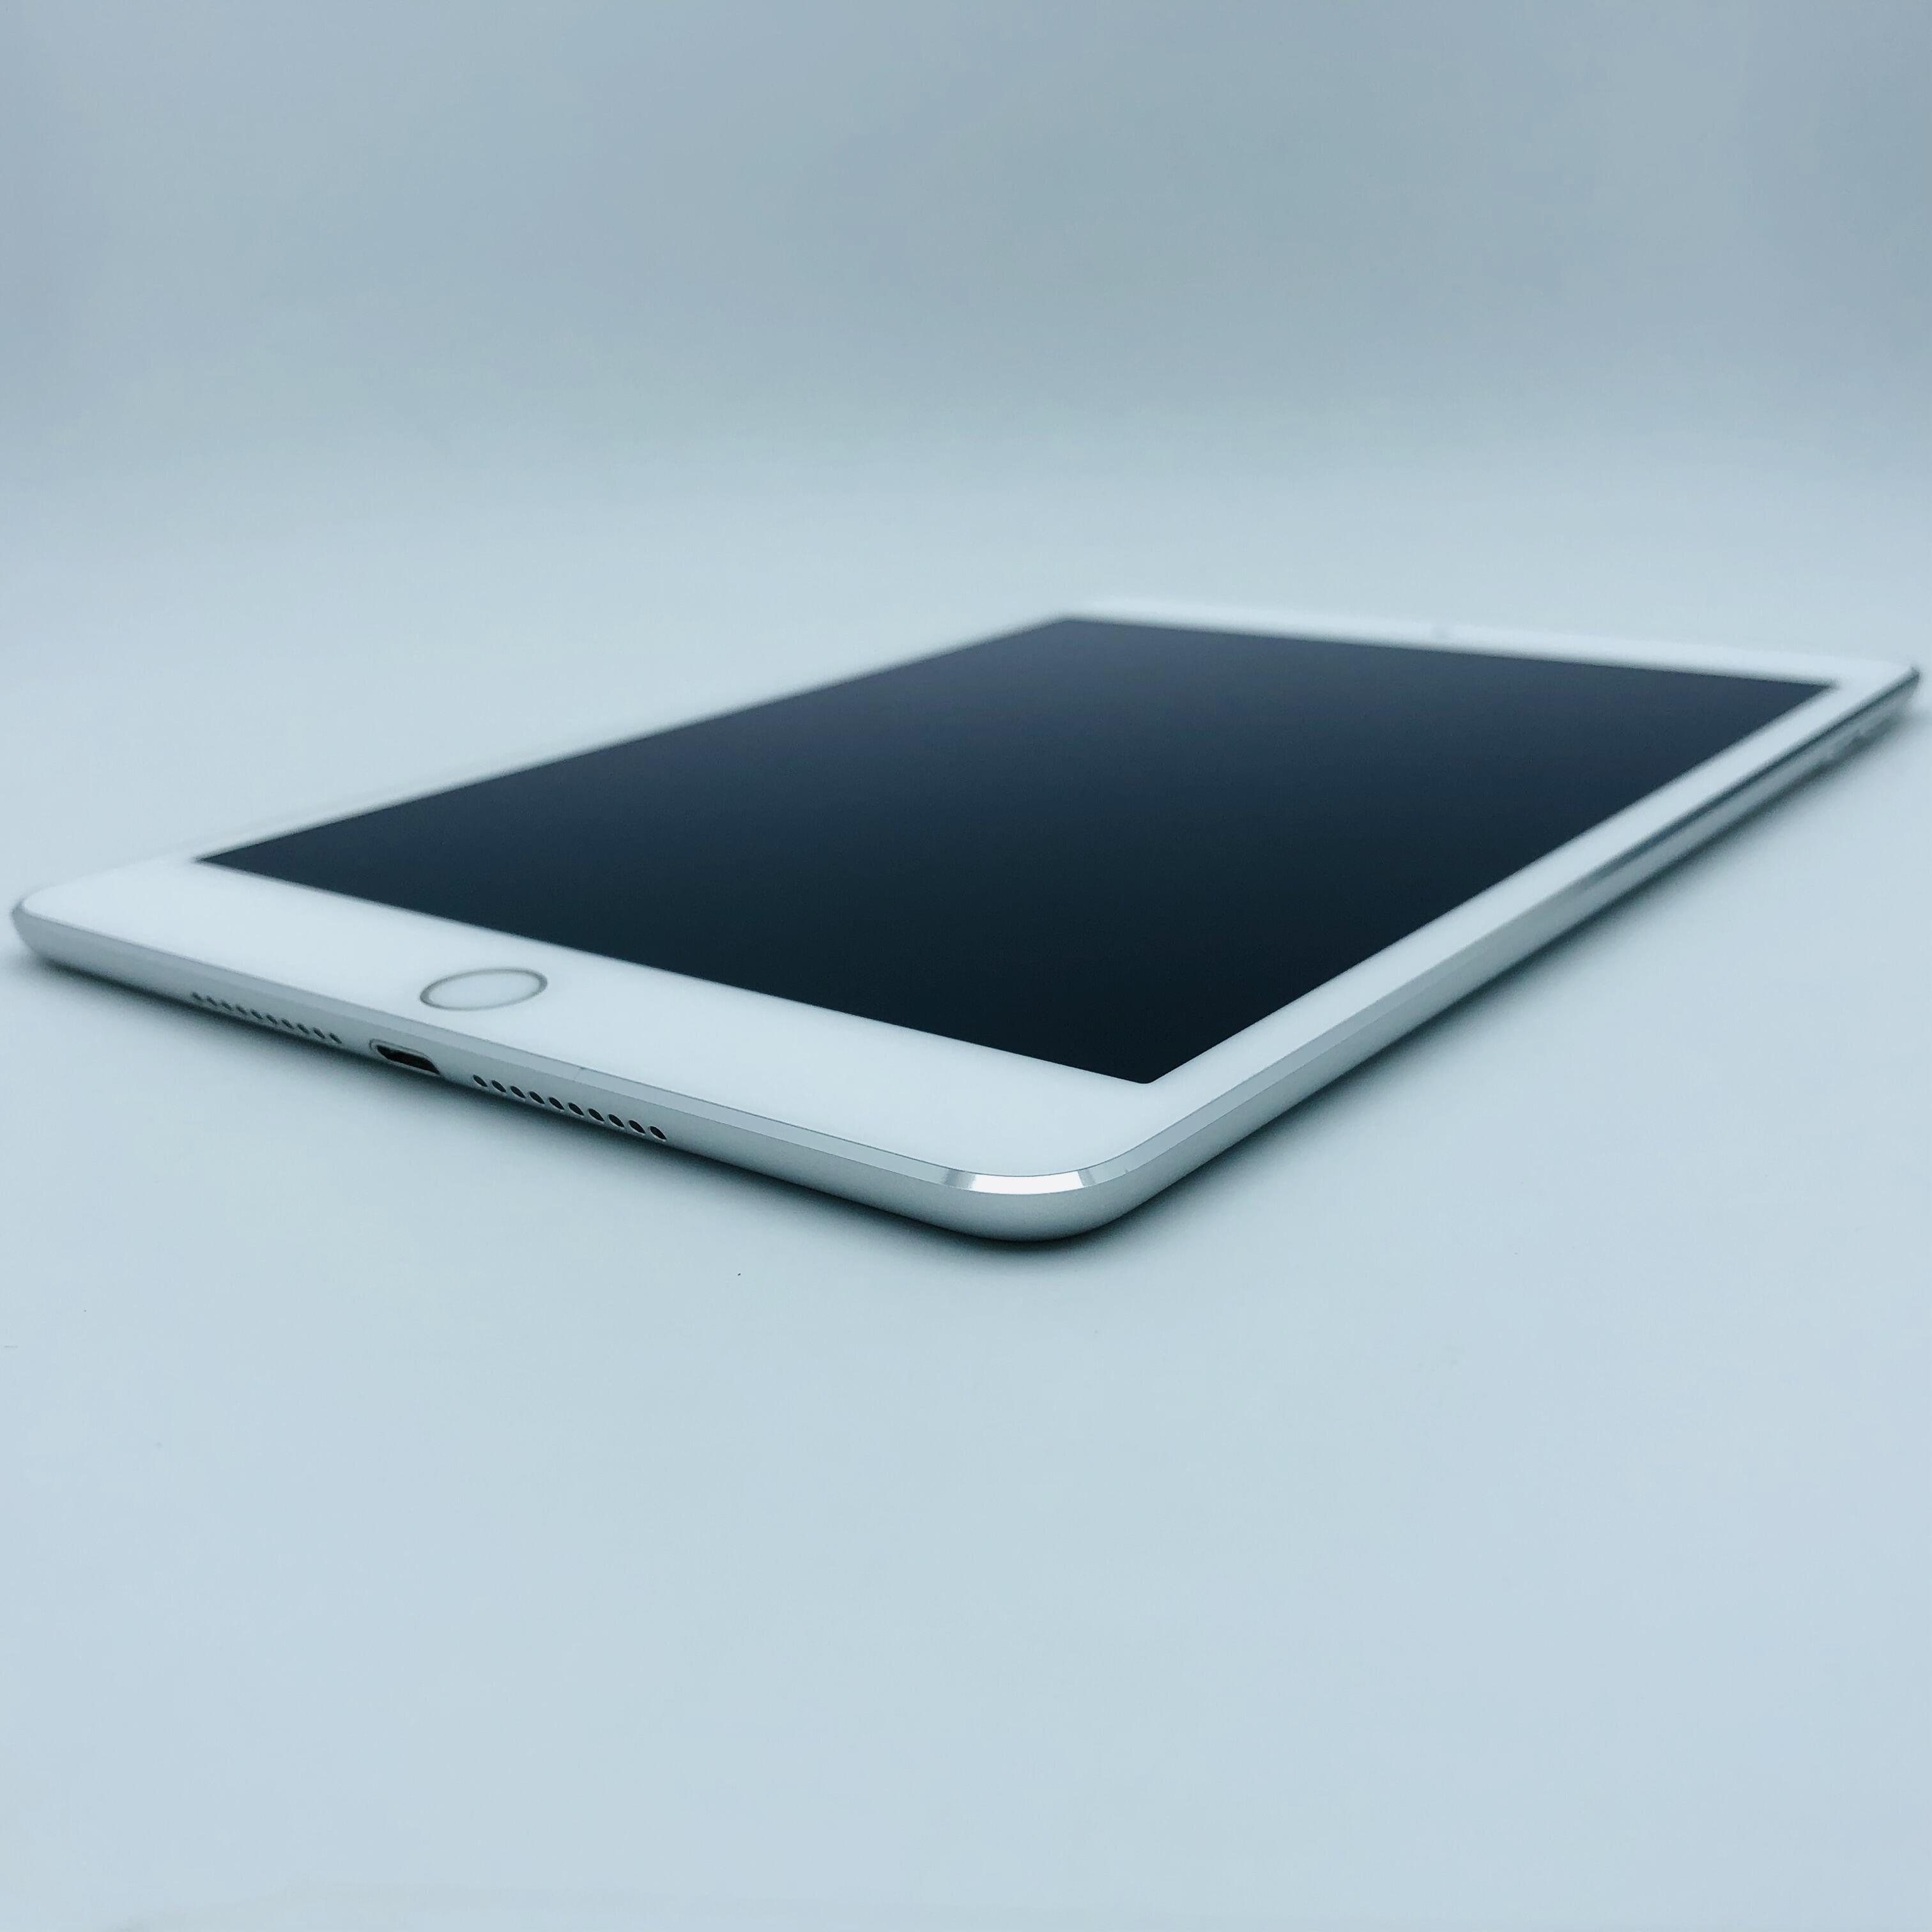 iPad mini 4 32G 国行WIFI版